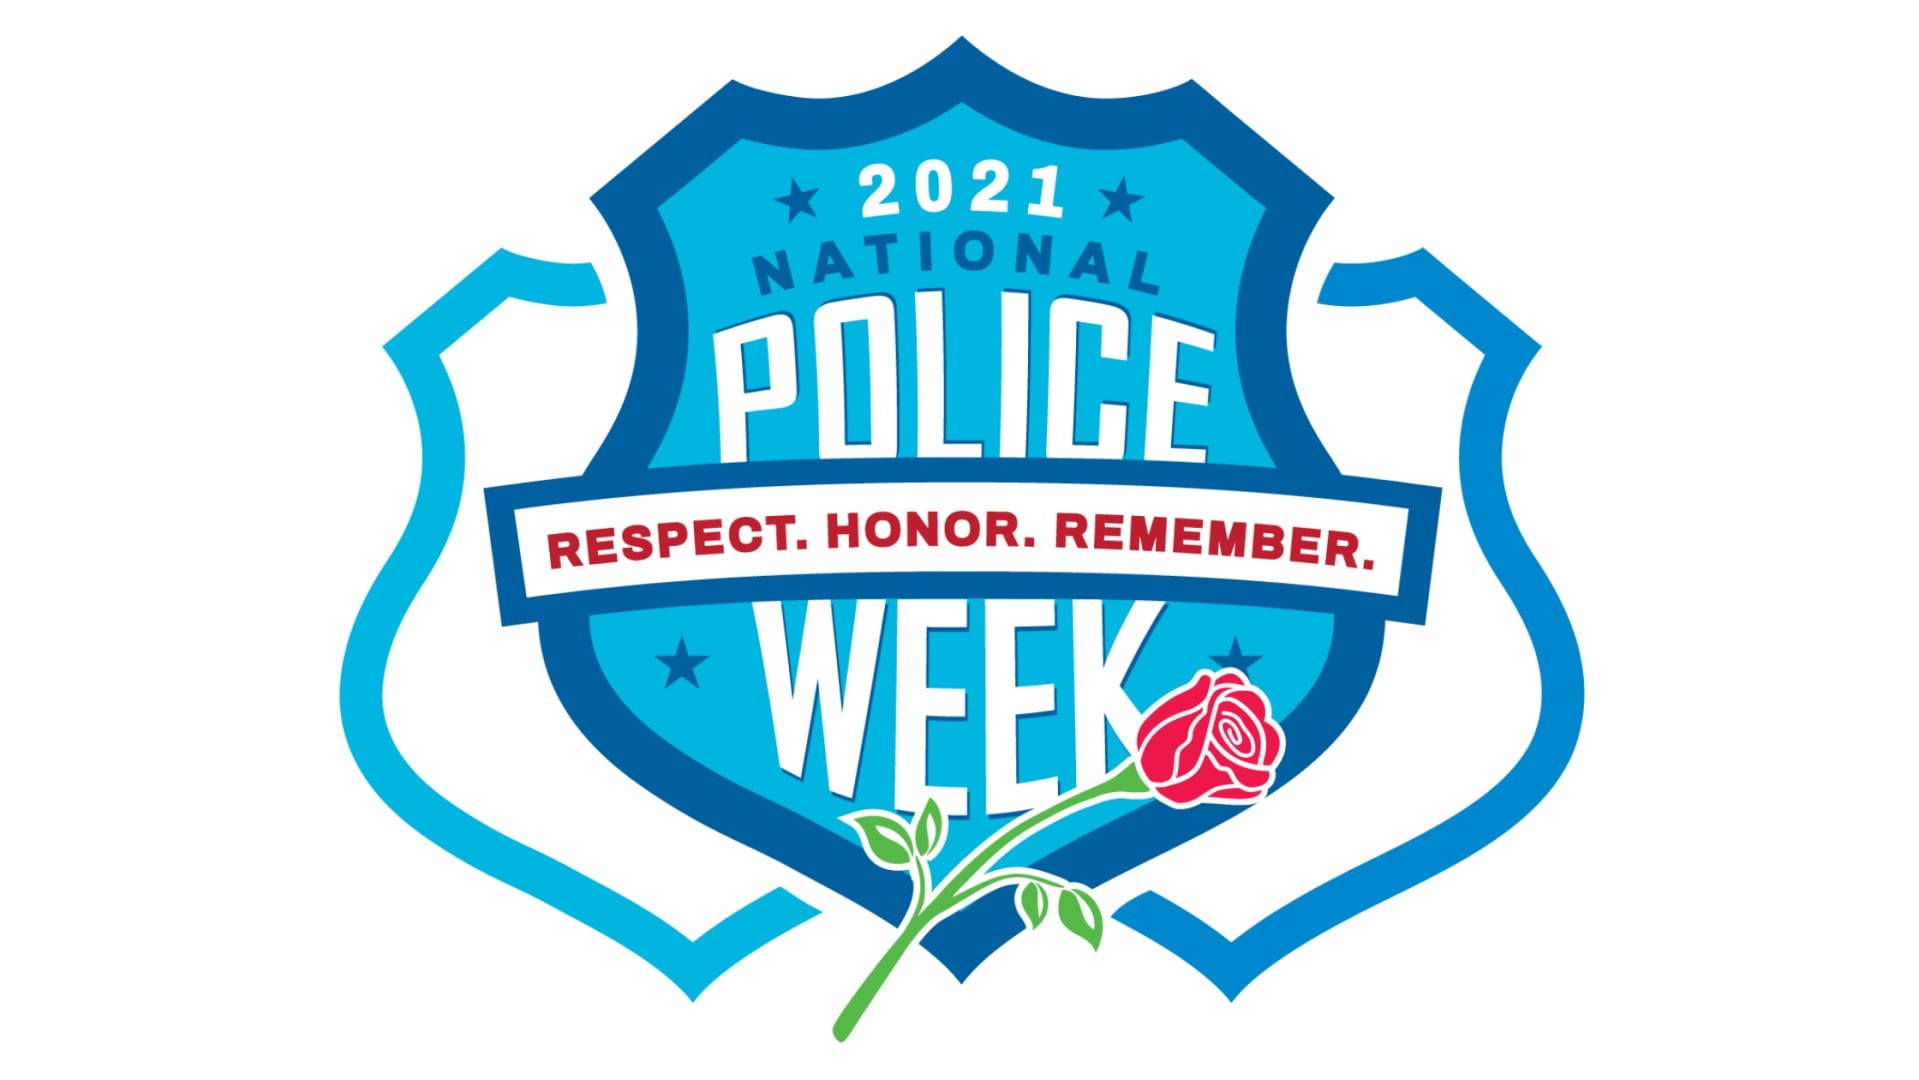 National Police Week Badge